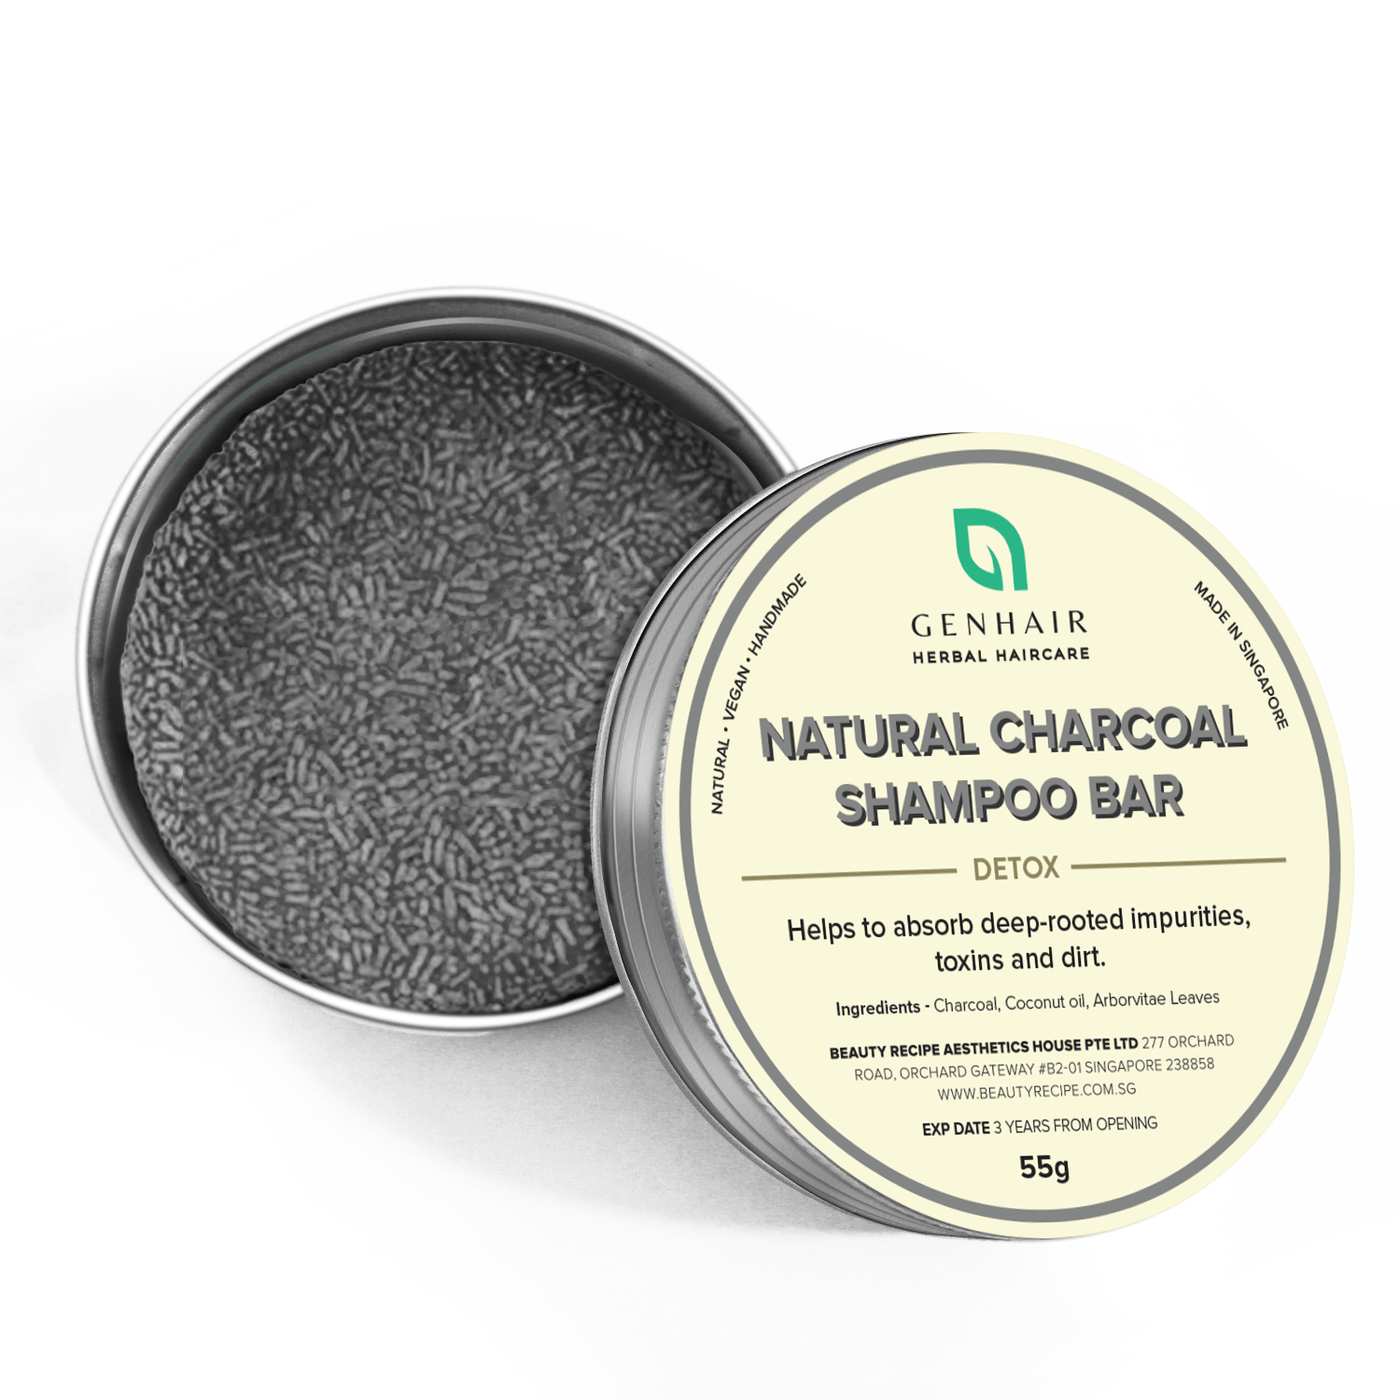 Natural Charcoal Shampoo Bar - Detox Clogged Pores